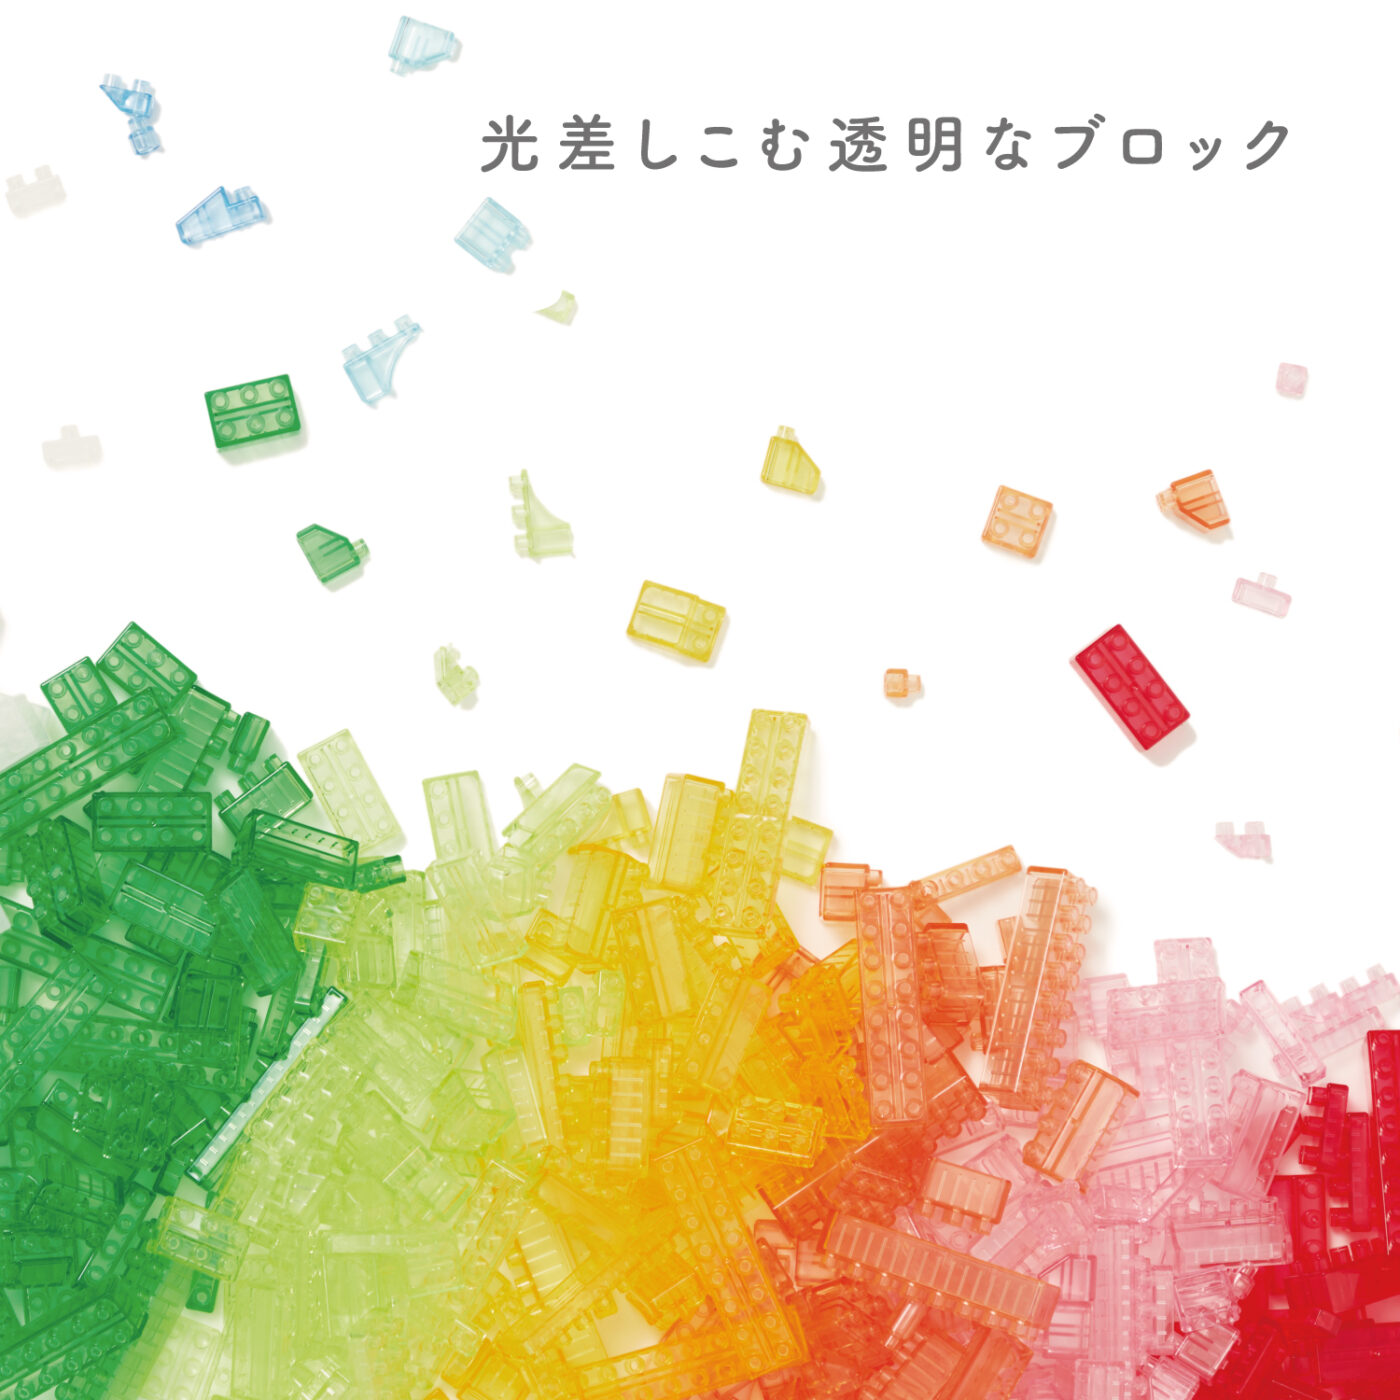 ダイヤブロック HIKARIIRO(ヒカリイロ) Sの商品画像4